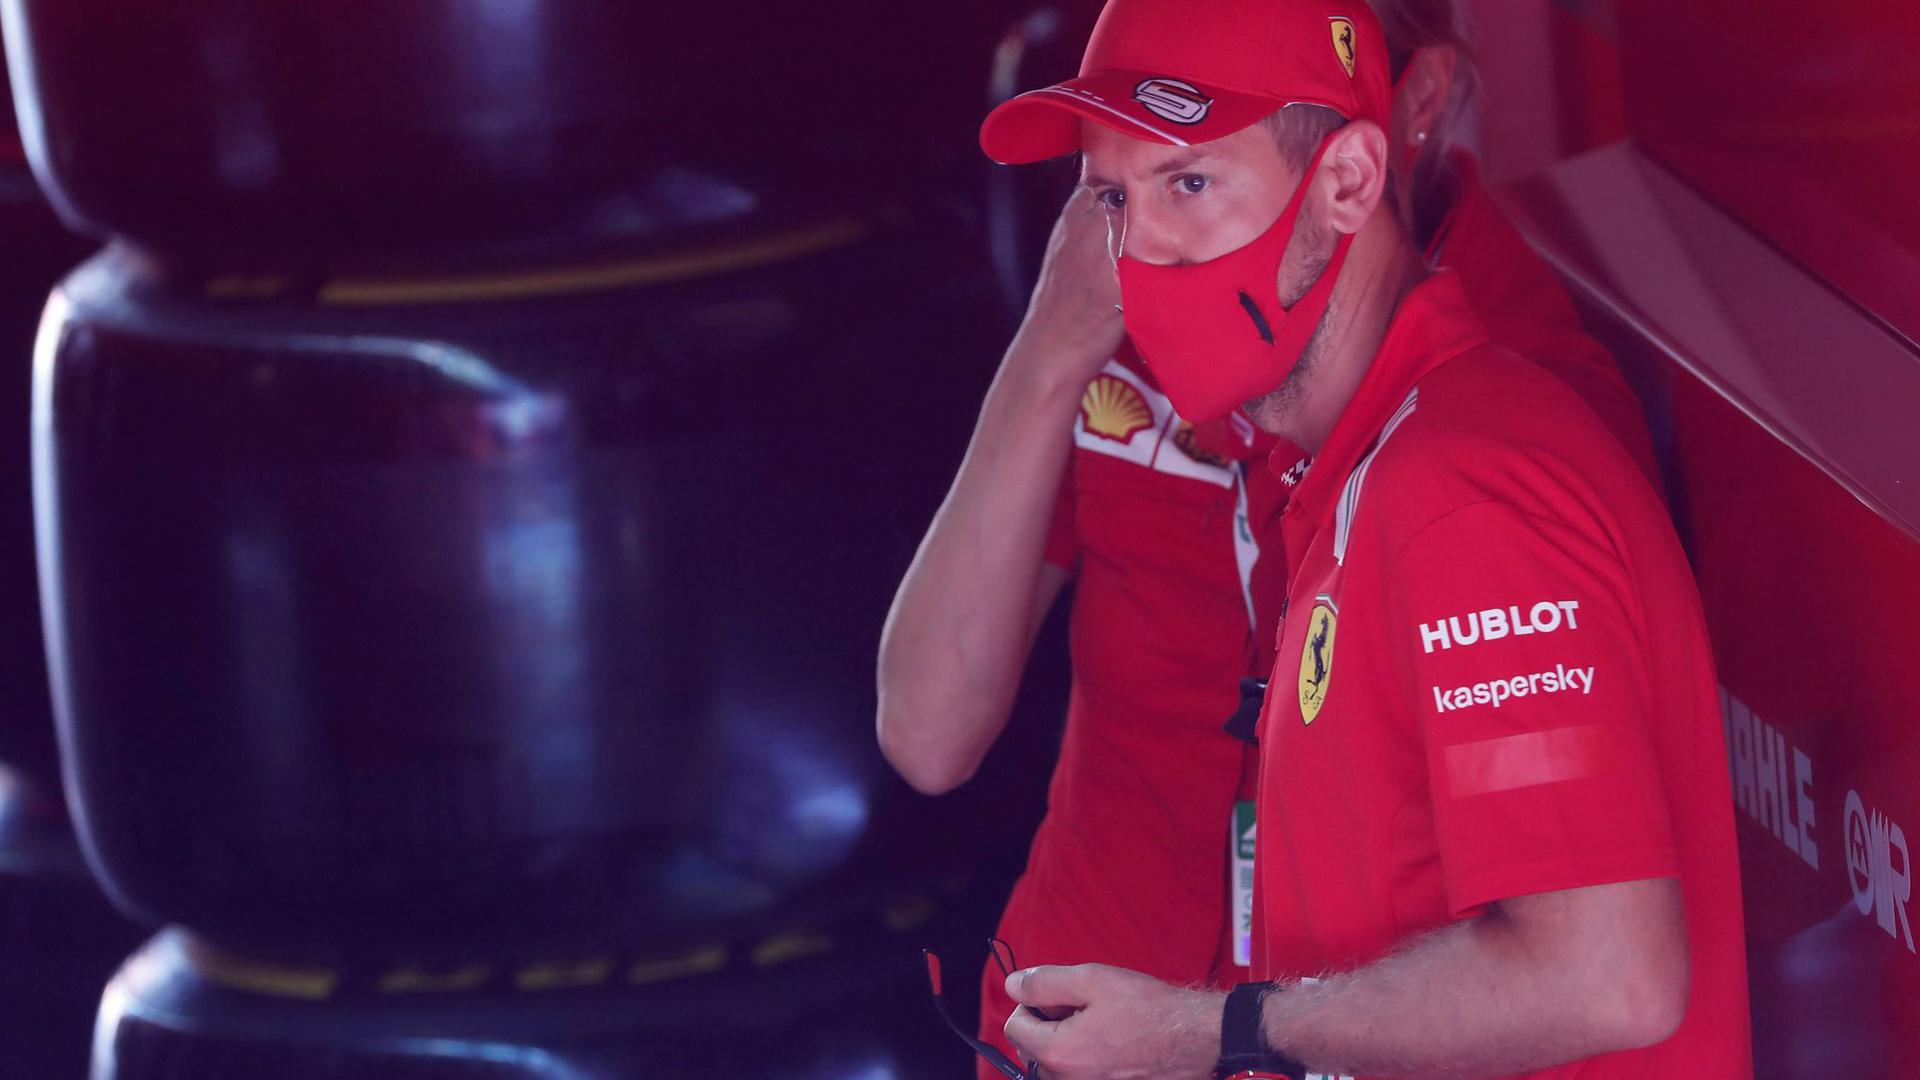 Erwartet von seinem neuen Ferrari-Chassis keine Wunder: Sebastian Vettel.